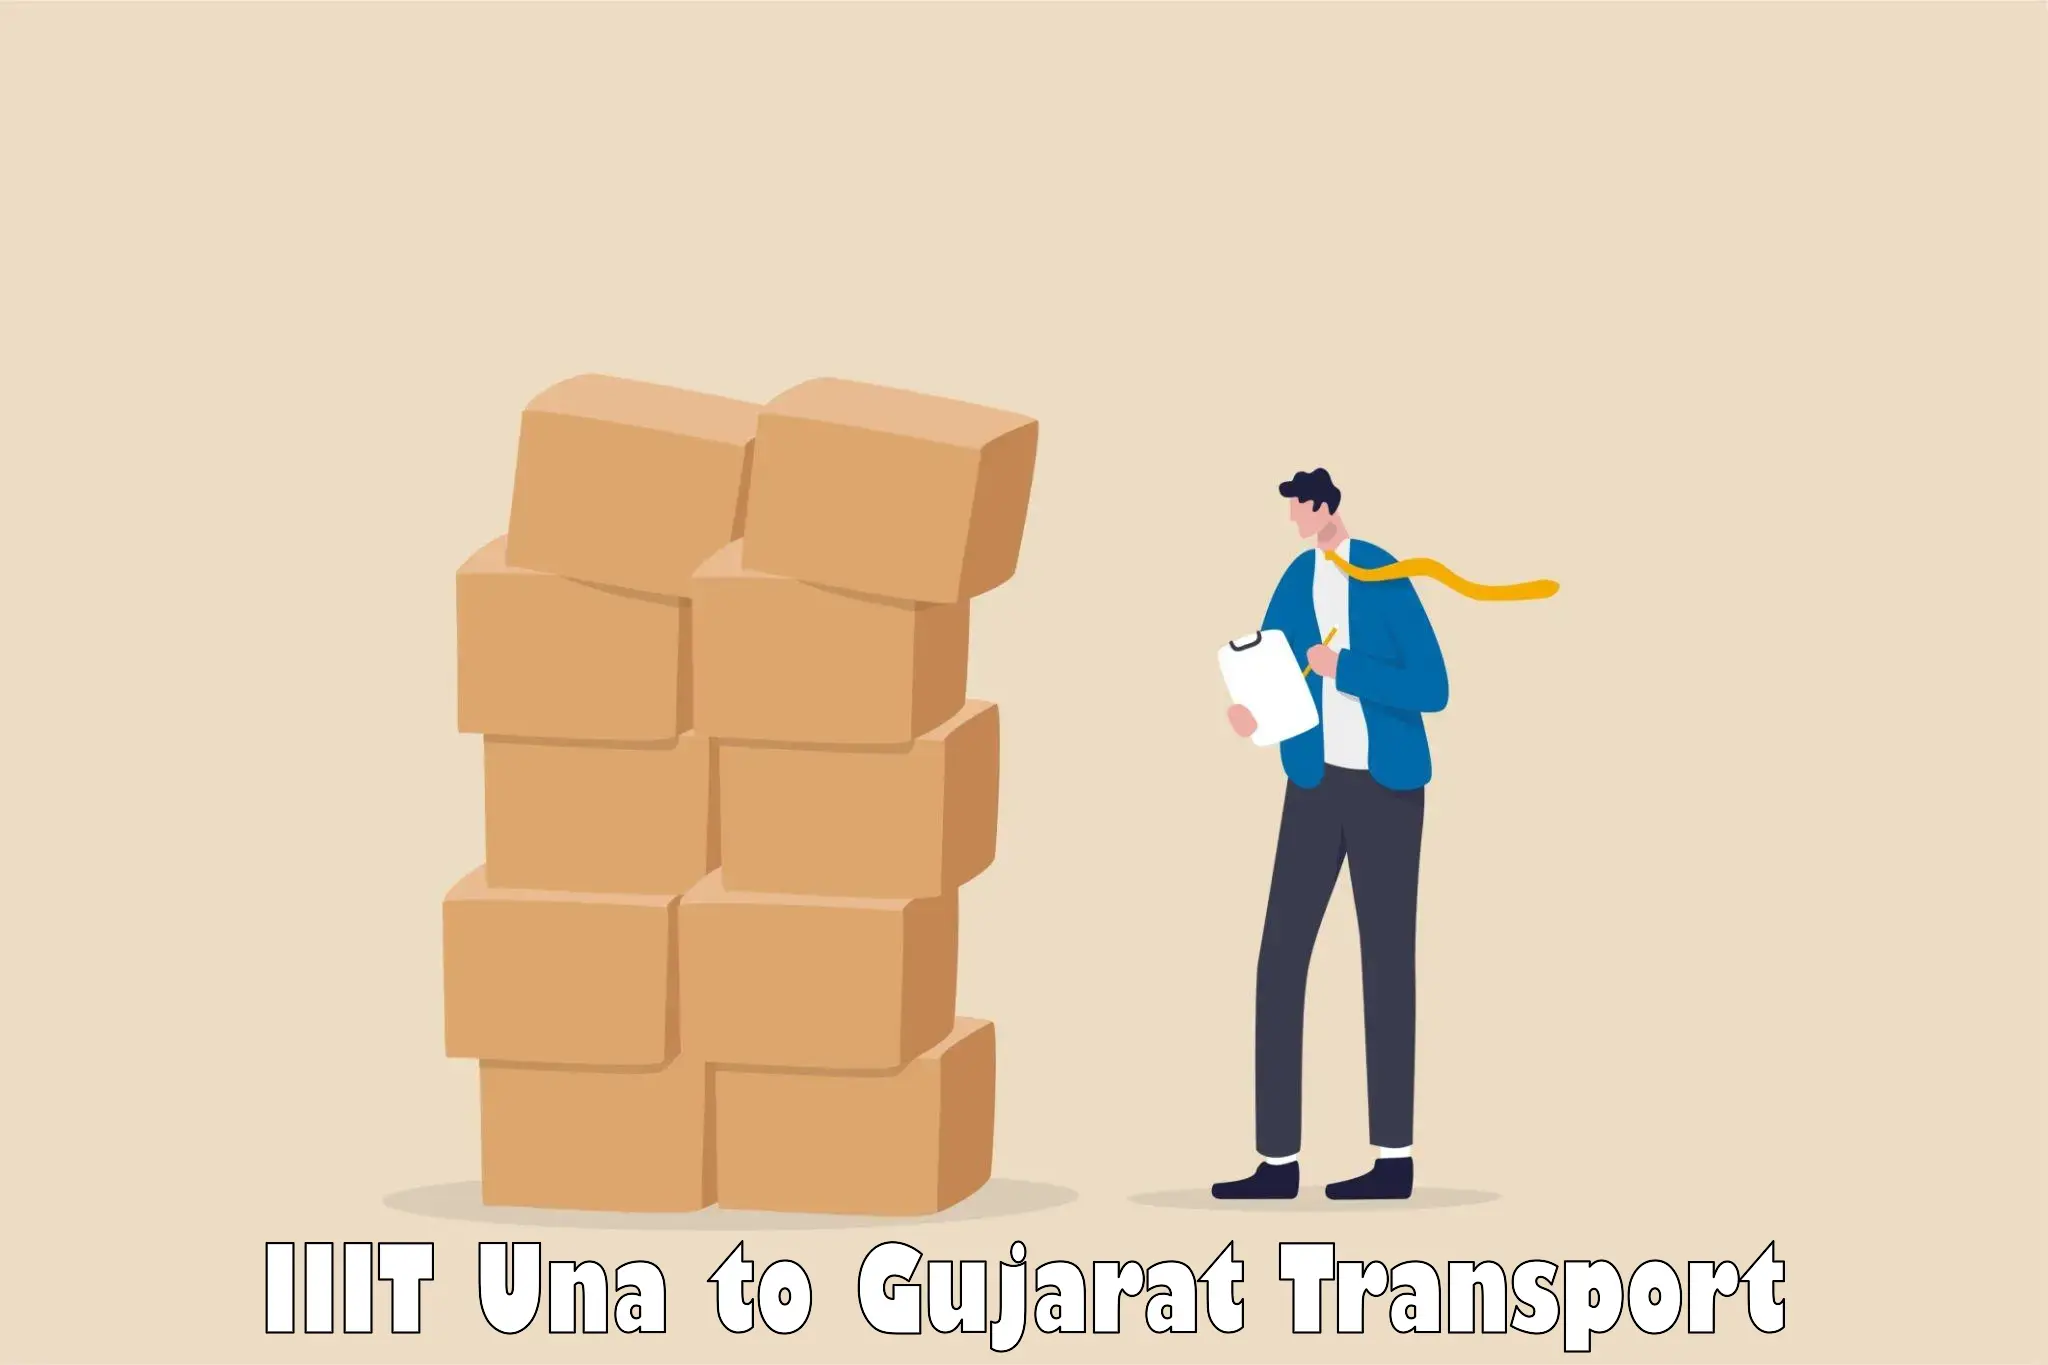 Online transport IIIT Una to Bhanvad